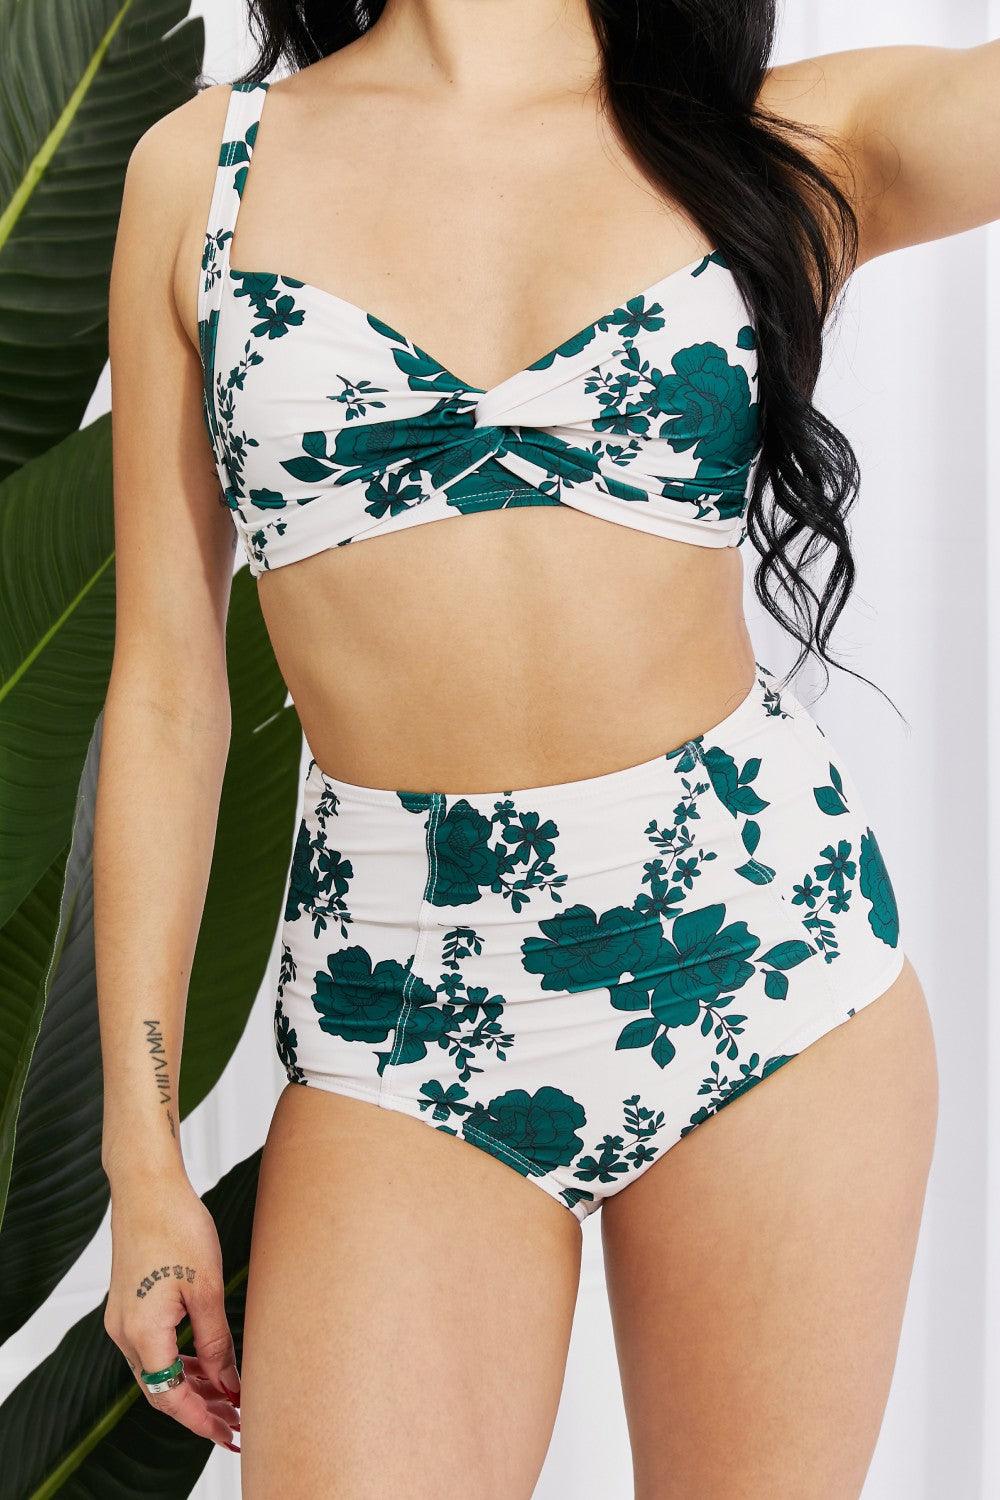 Marina West Swim Take A Dip Twist High-Rise Bikini in Forest - Glamorous Boutique USA L.L.C.